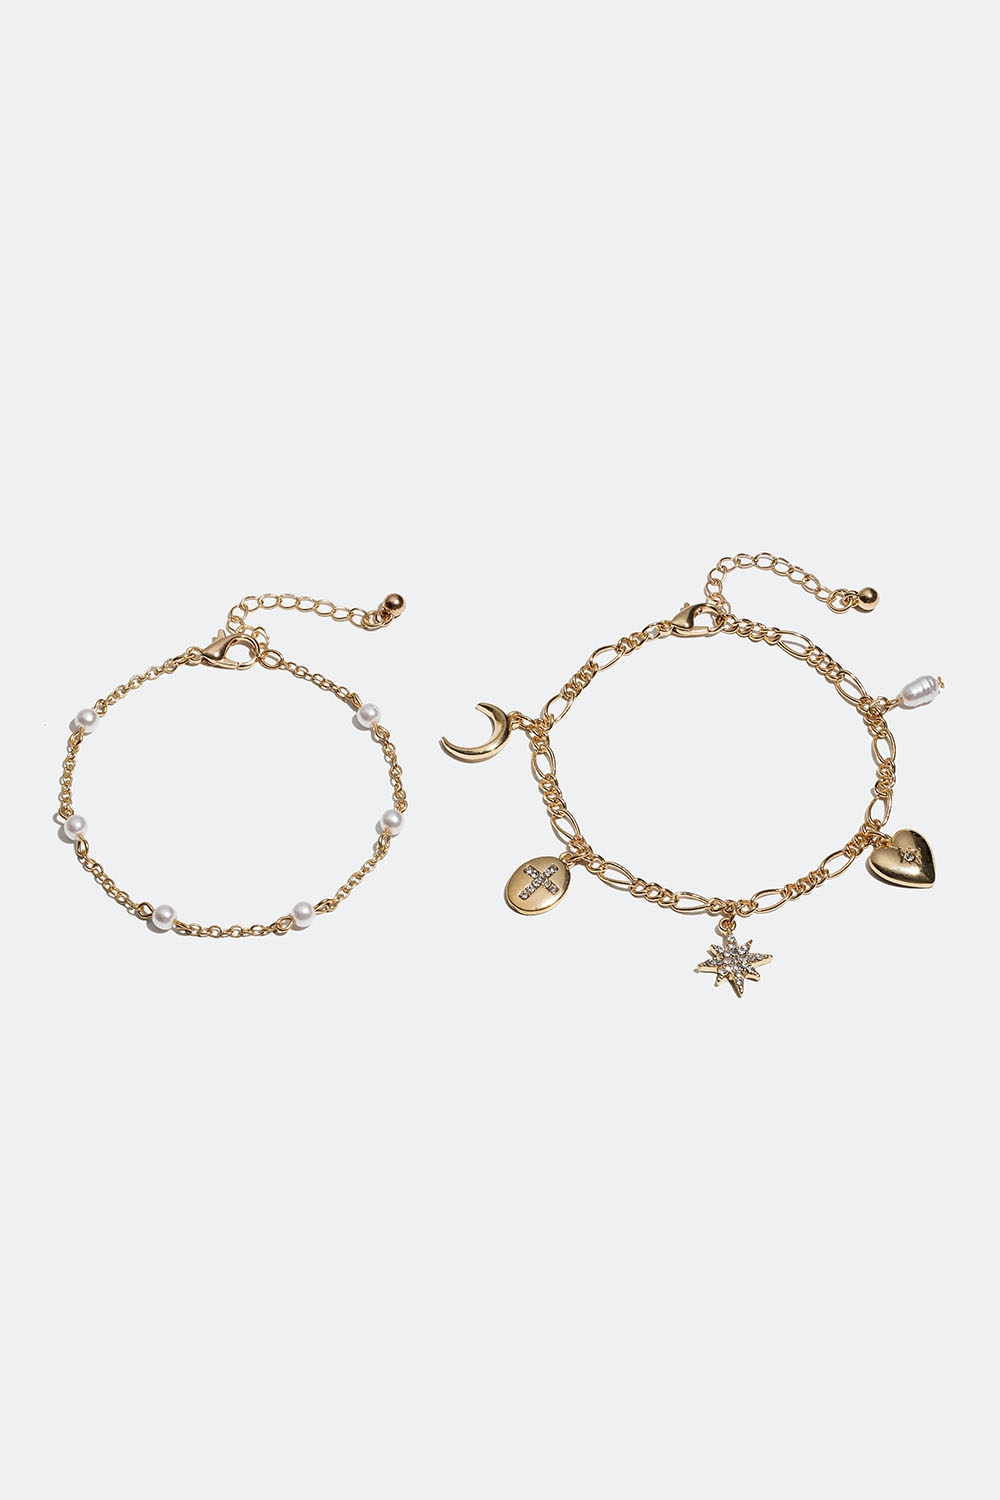 Gullfargede armbånd med perler og charms, 2-pakning i gruppen Smykker hos Glitter (251000792002)